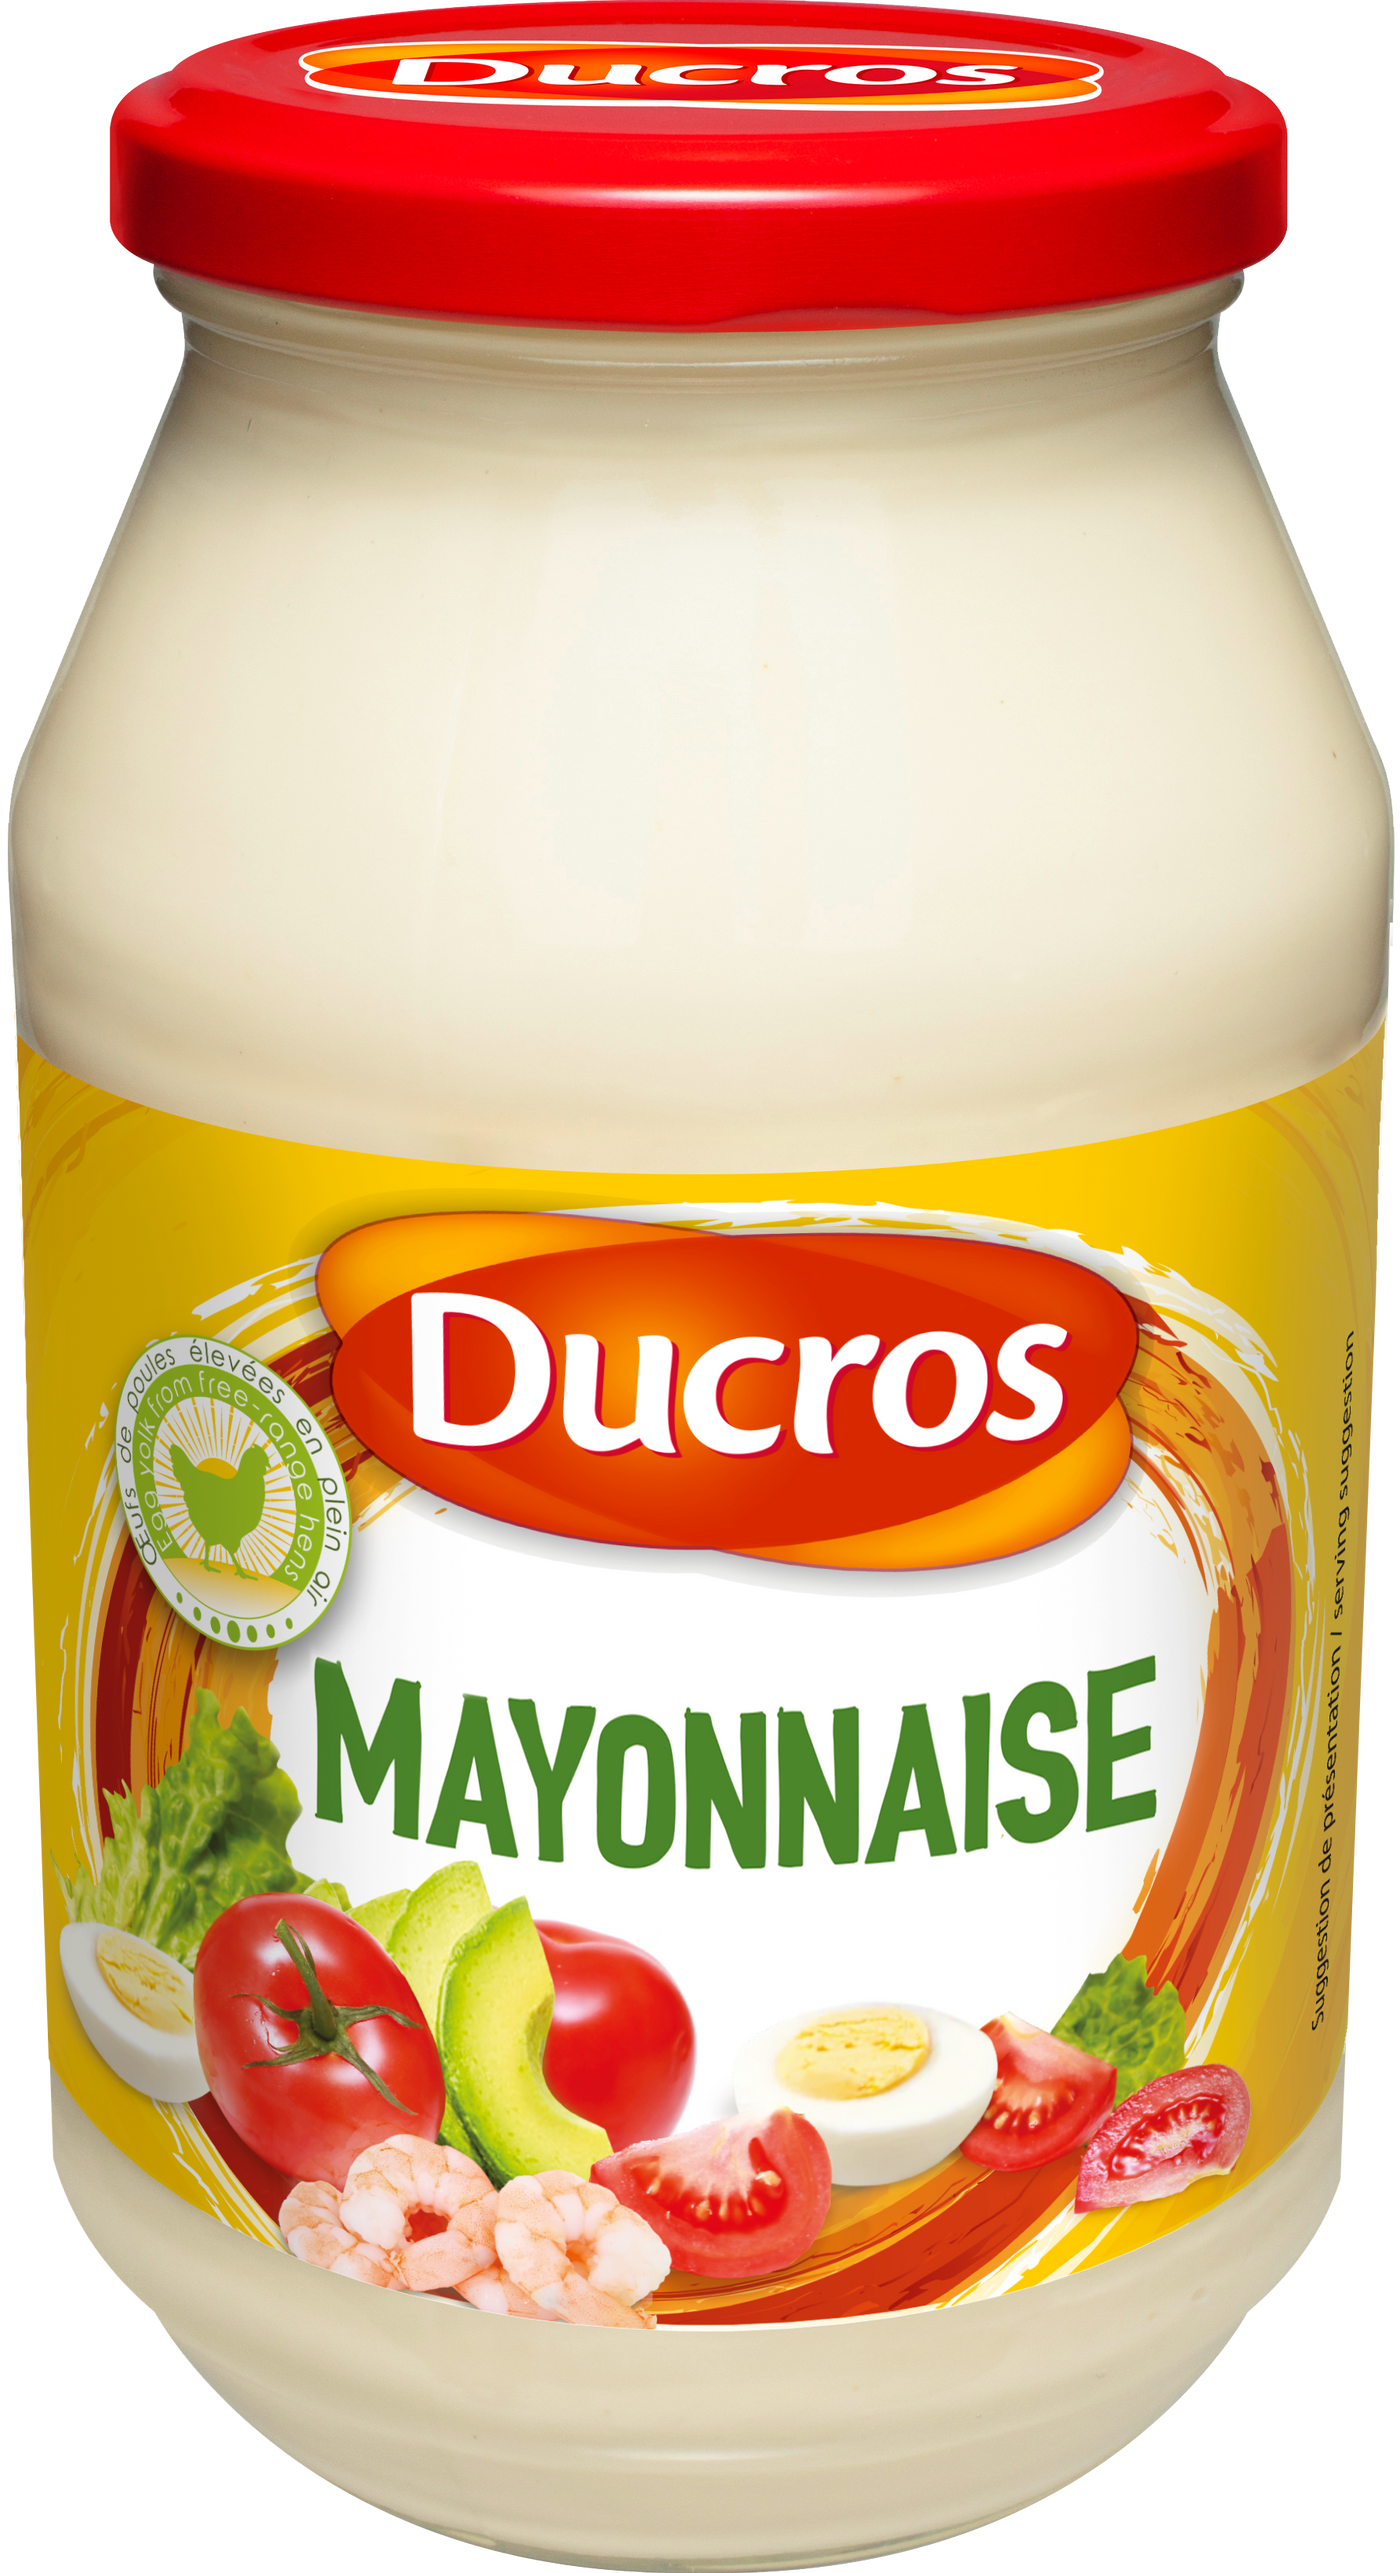 Ducros Mayonnaise 940g